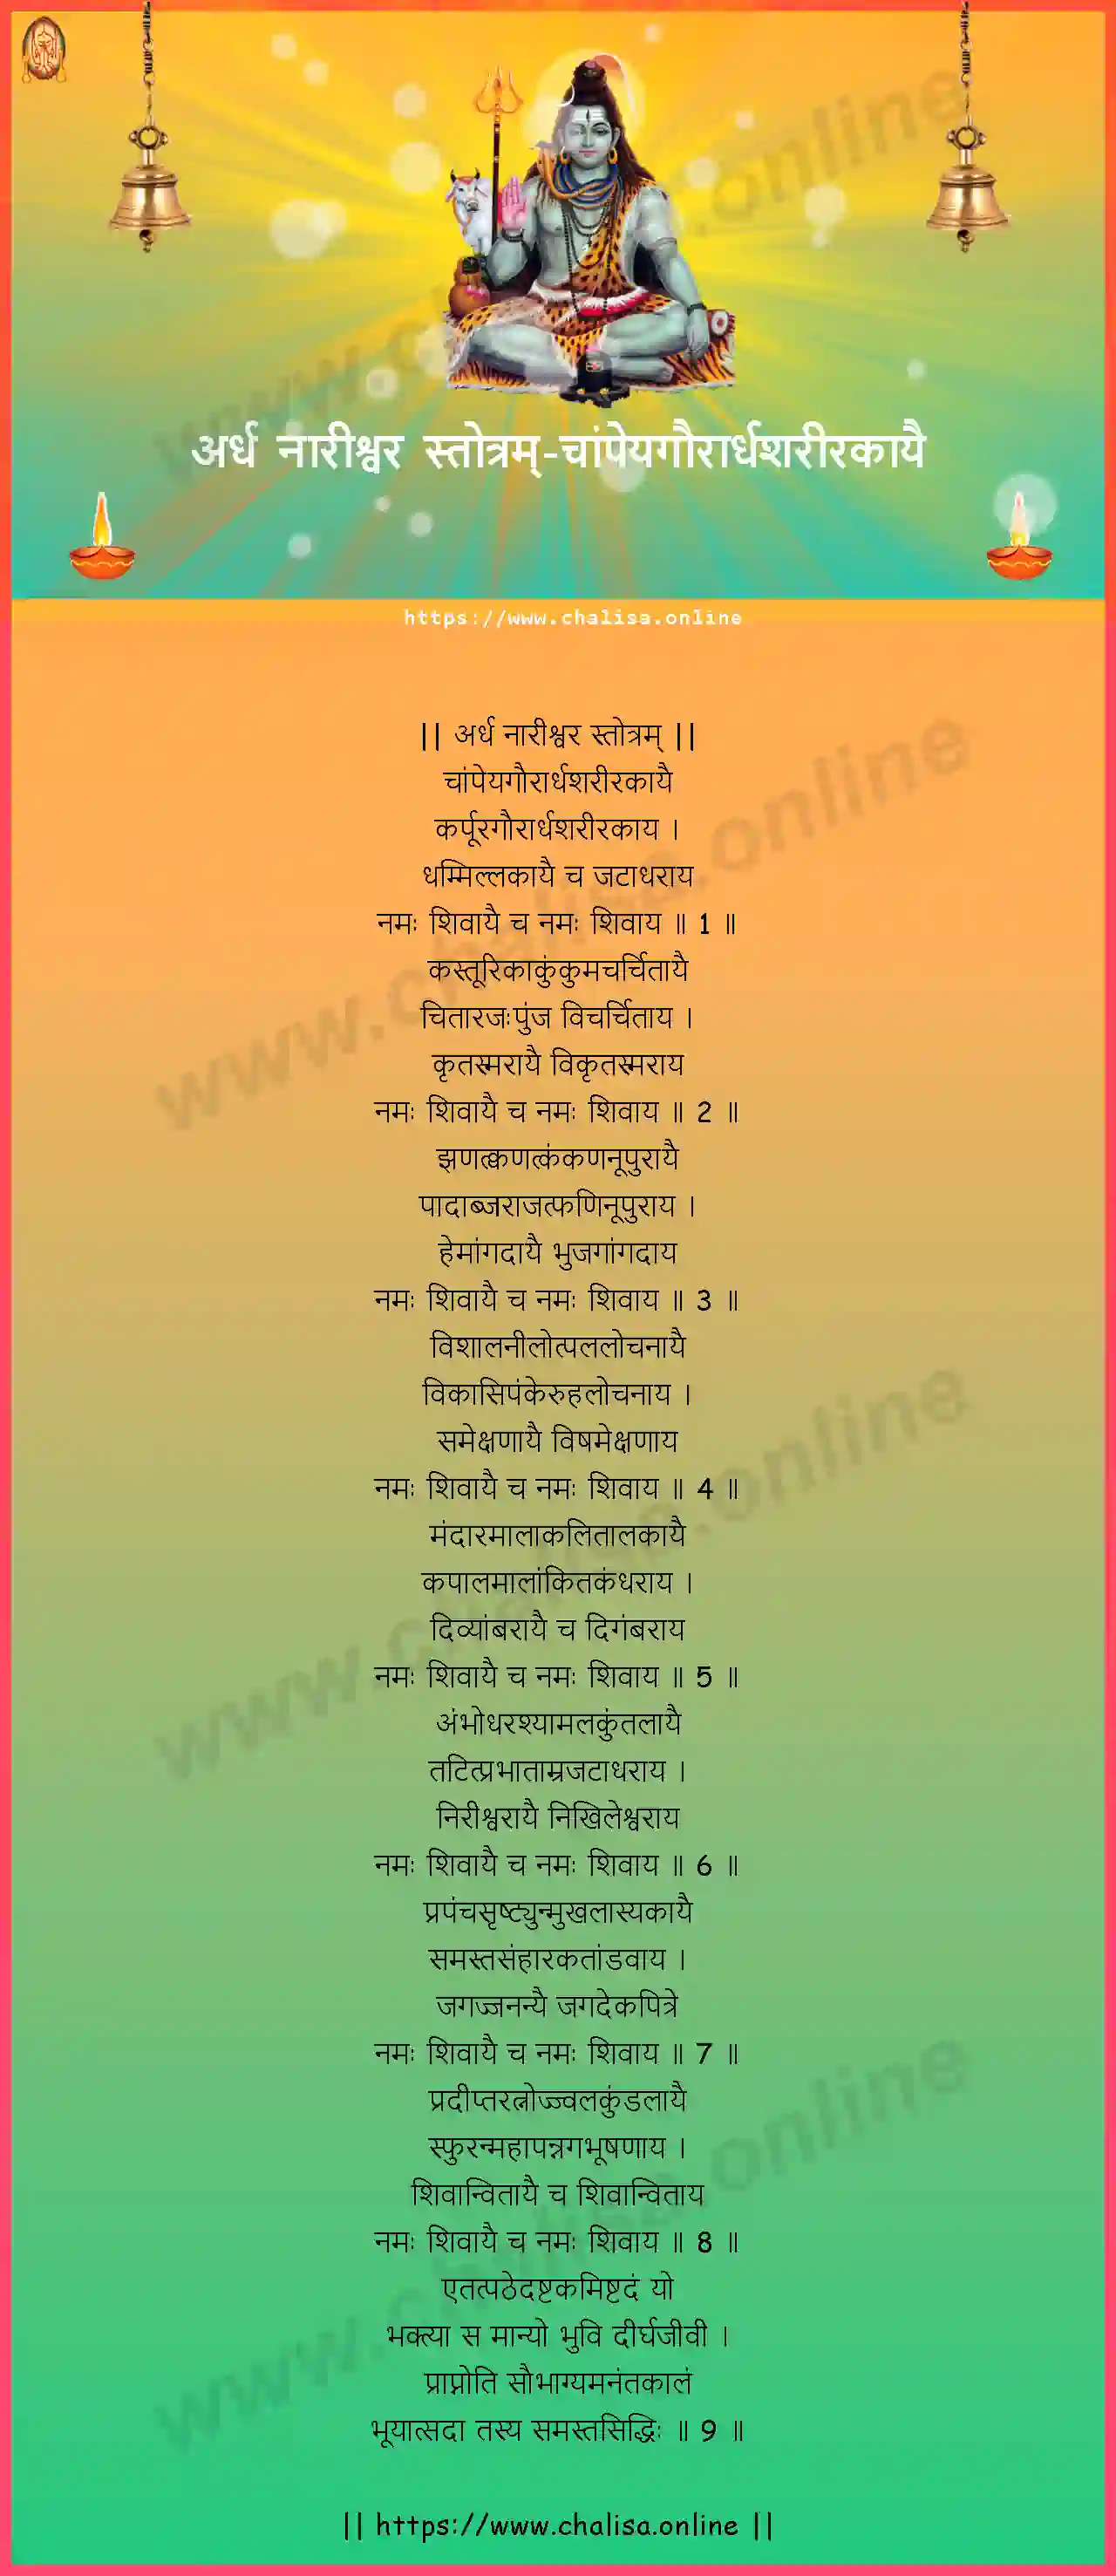 champeyagaurardhasarirakayai-ardha-nareeswara-stotram-konkani-konkani-lyrics-download